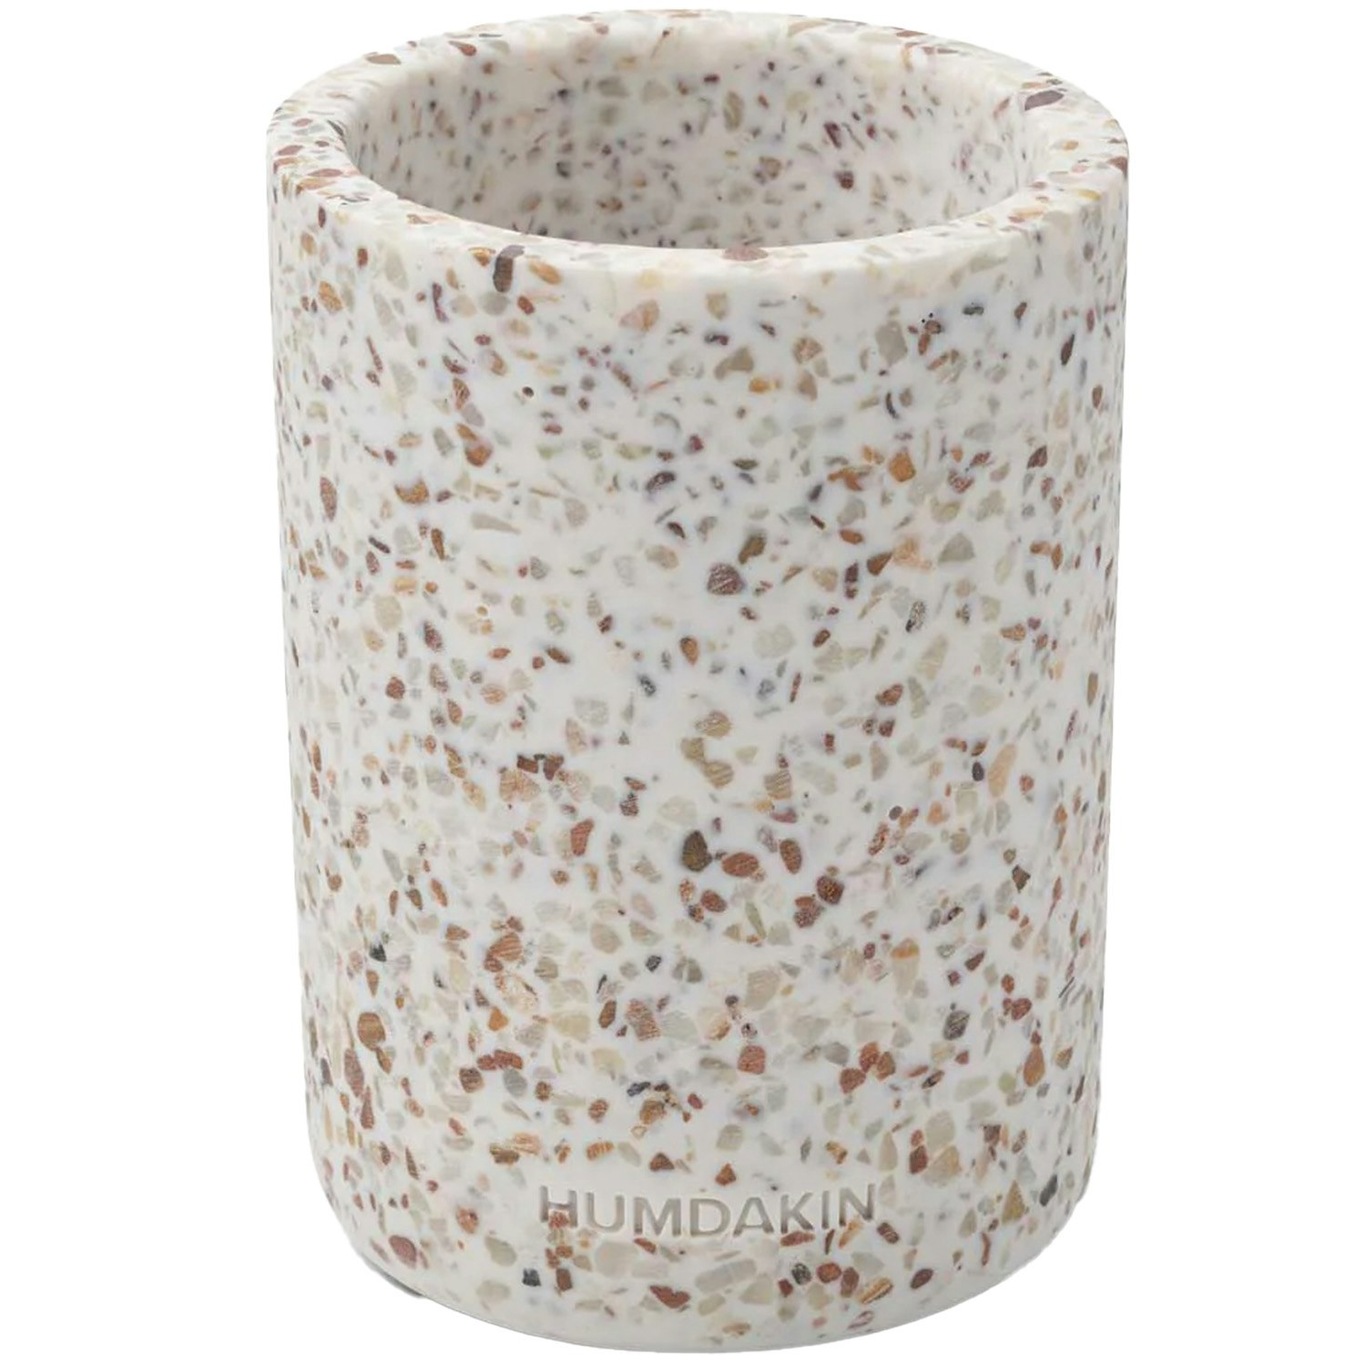 Terarazzo Vase 14 cm, White/Brown